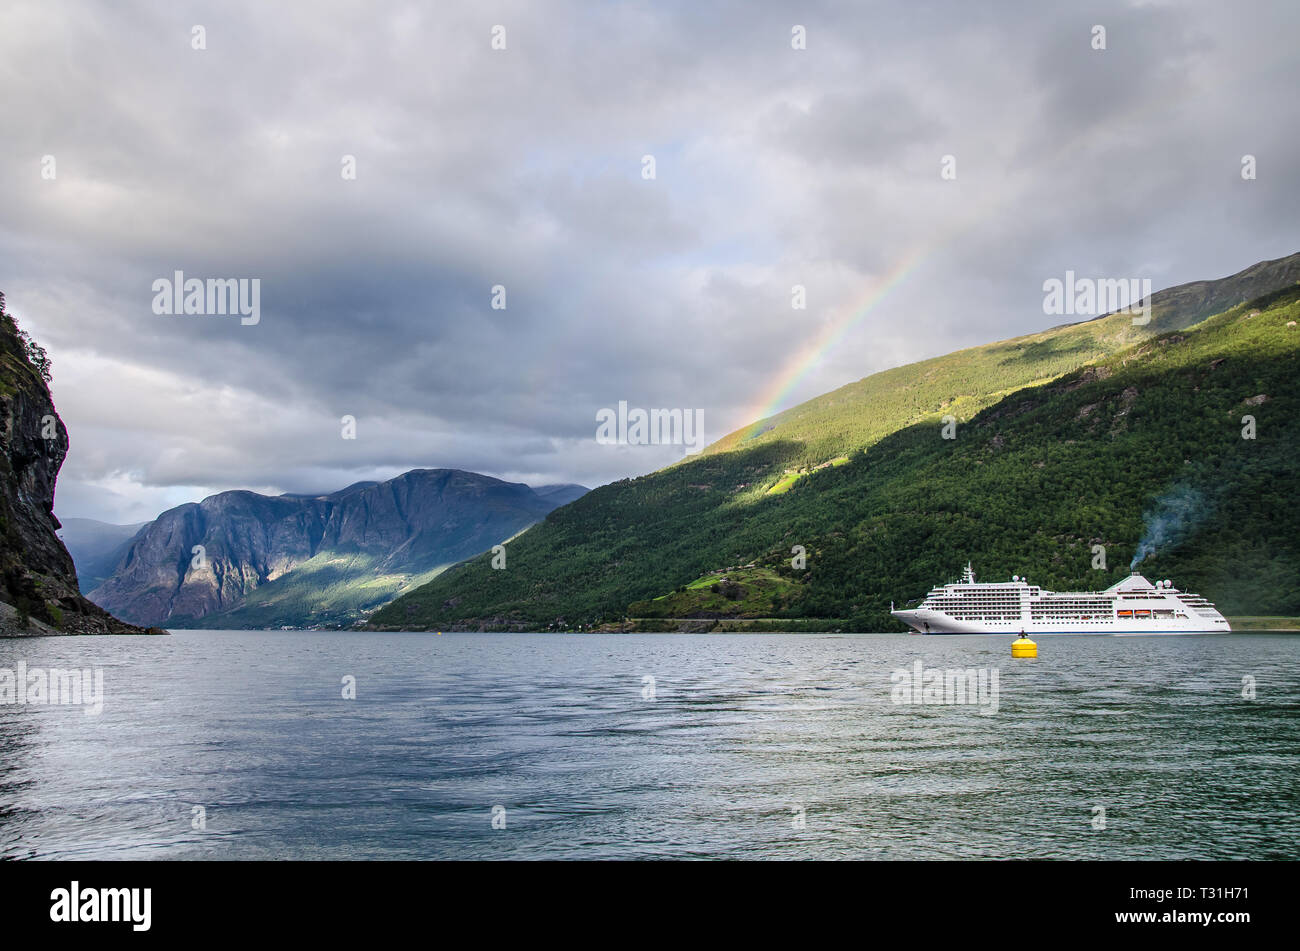 Nave a vela su un fiordo in Norvegia con le montagne alle spalle e rainbow e nuvole sopra. Foto Stock